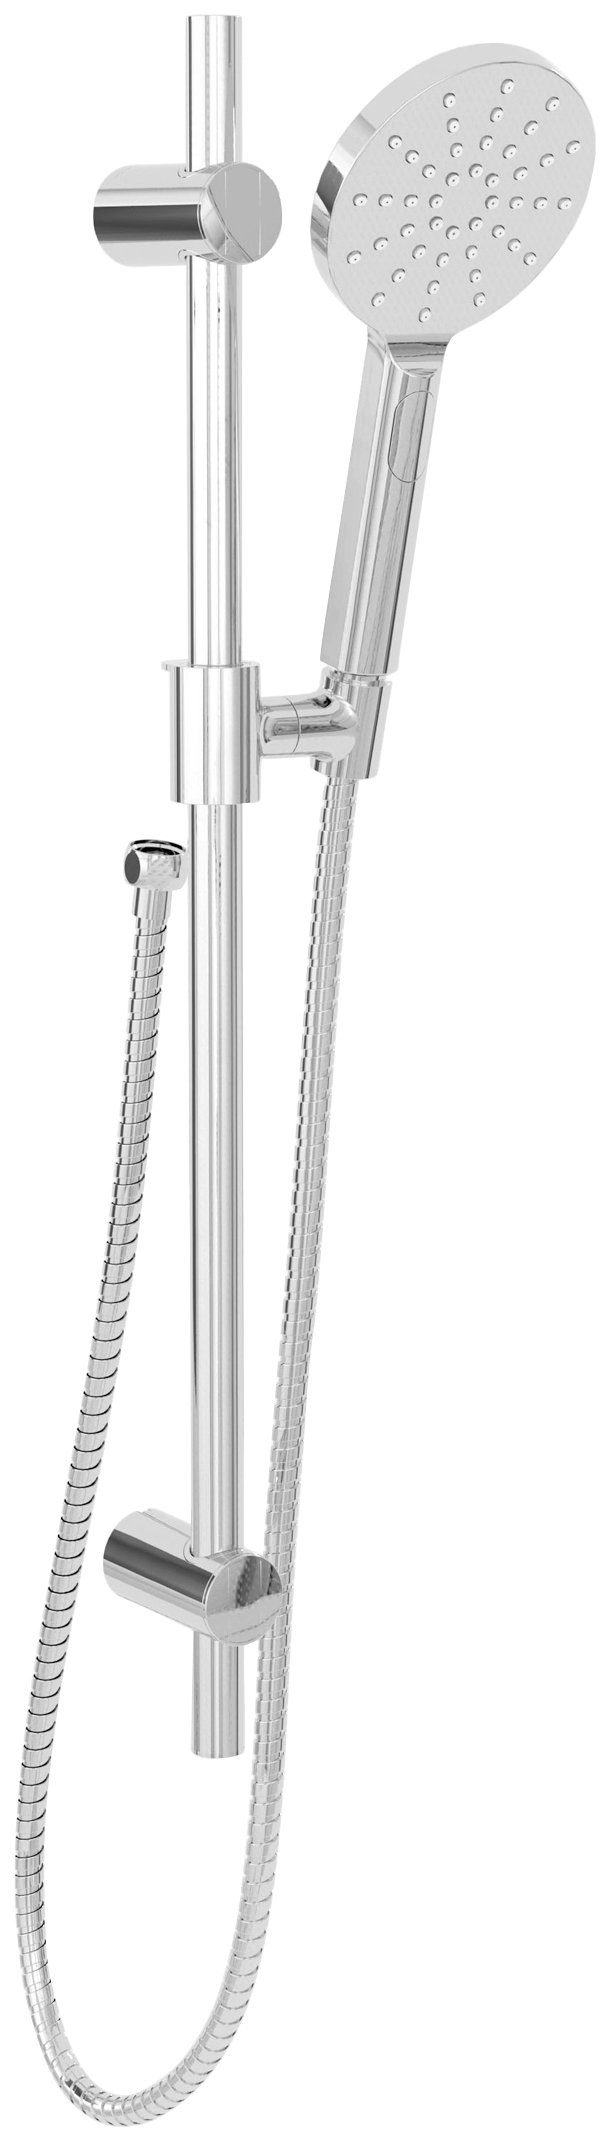 Marwell Brausegarnitur SILVER RAINSTAR, Höhe 70 cm, Komplett-Set, 1/2 Zoll